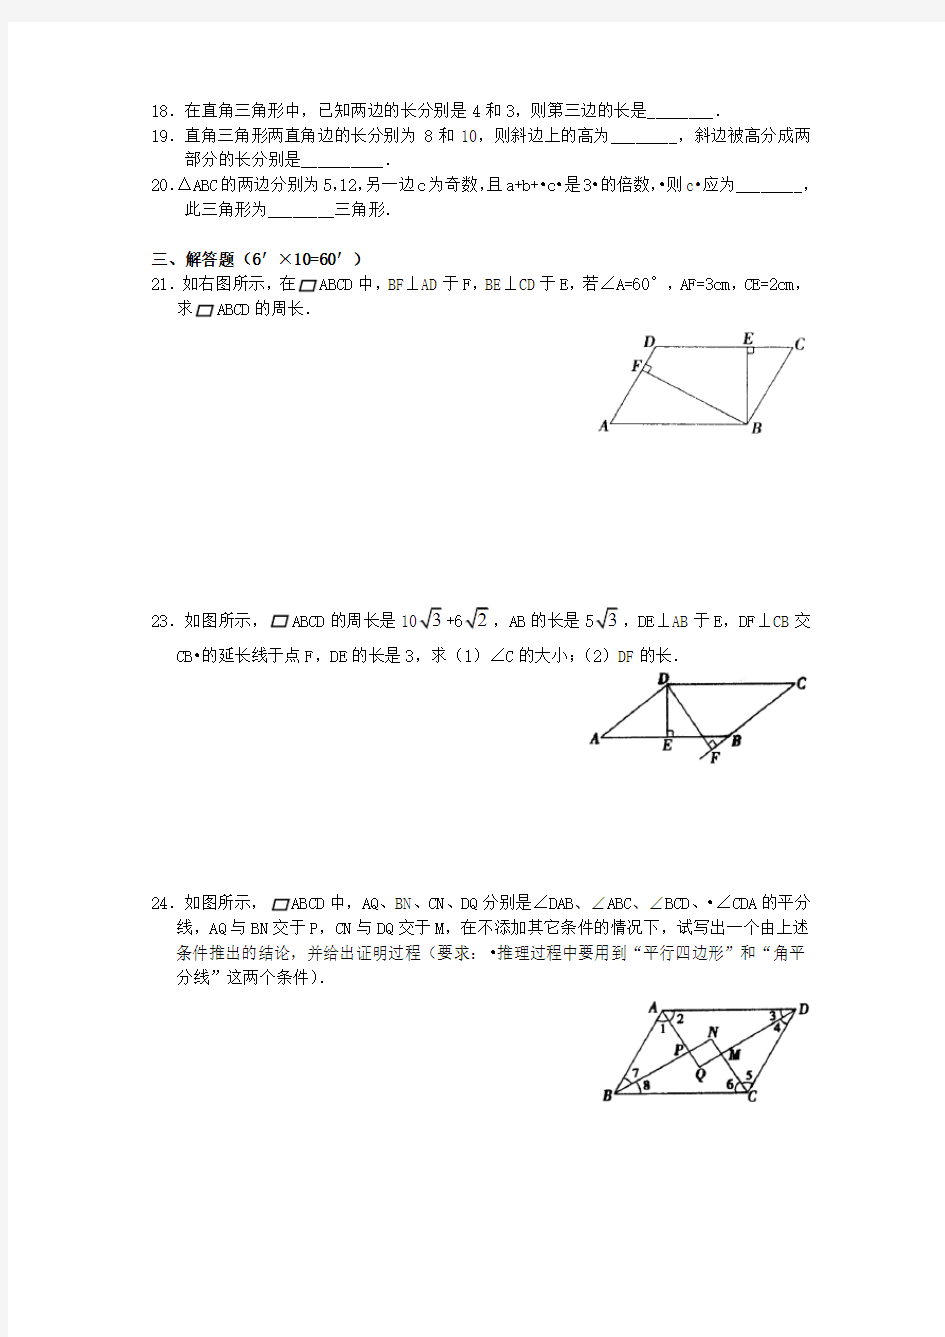 平行四边形经典练习题(3套)附带详细解答过程